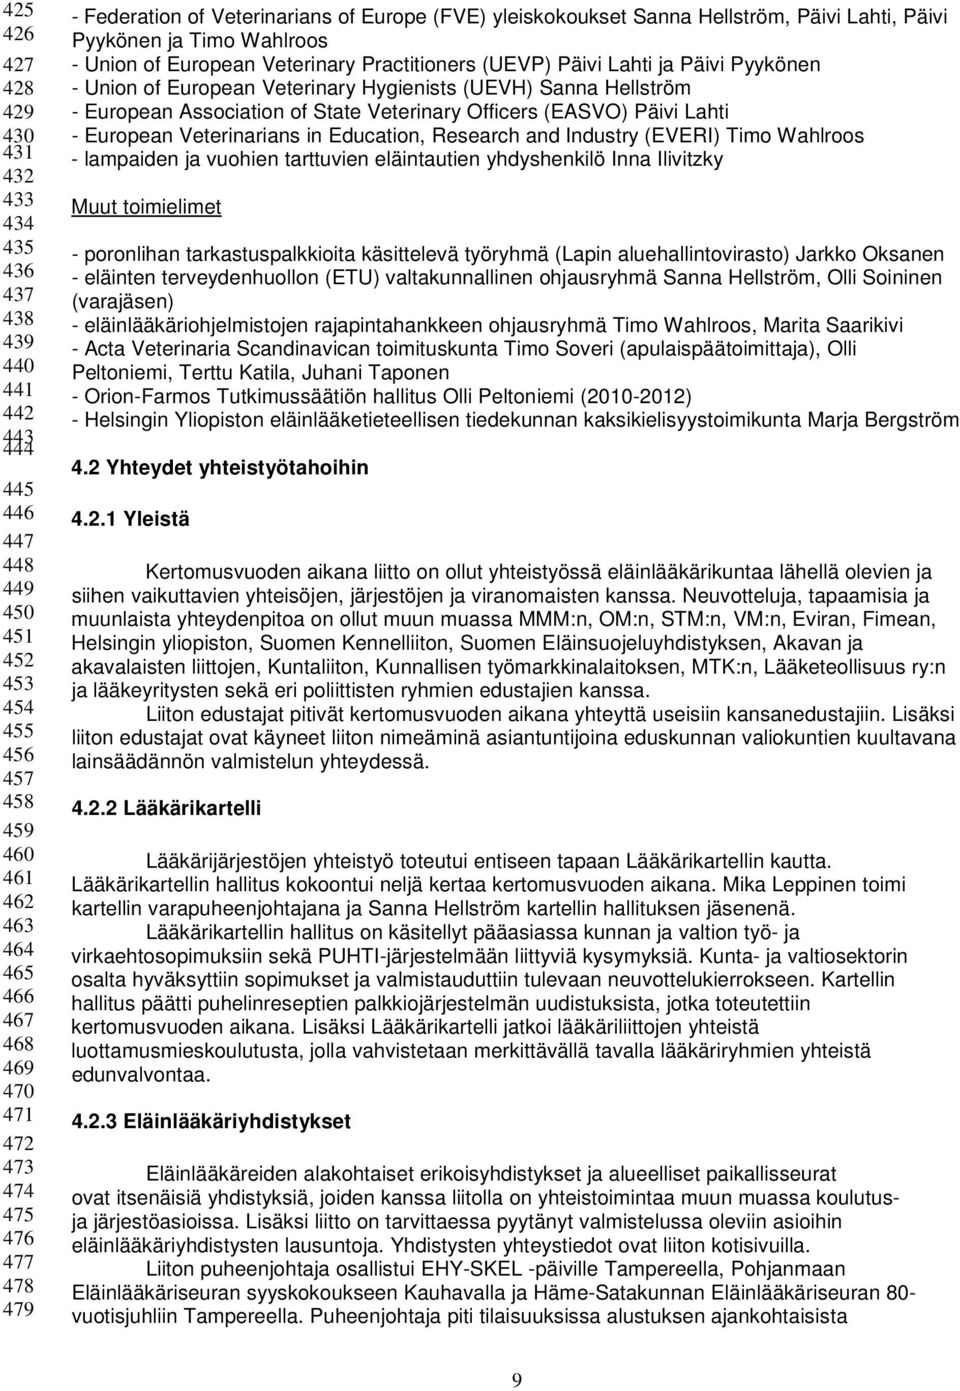 Päivi Lahti ja Päivi Pyykönen - Union of European Veterinary Hygienists (UEVH) Sanna Hellström - European Association of State Veterinary Officers (EASVO) Päivi Lahti - European Veterinarians in